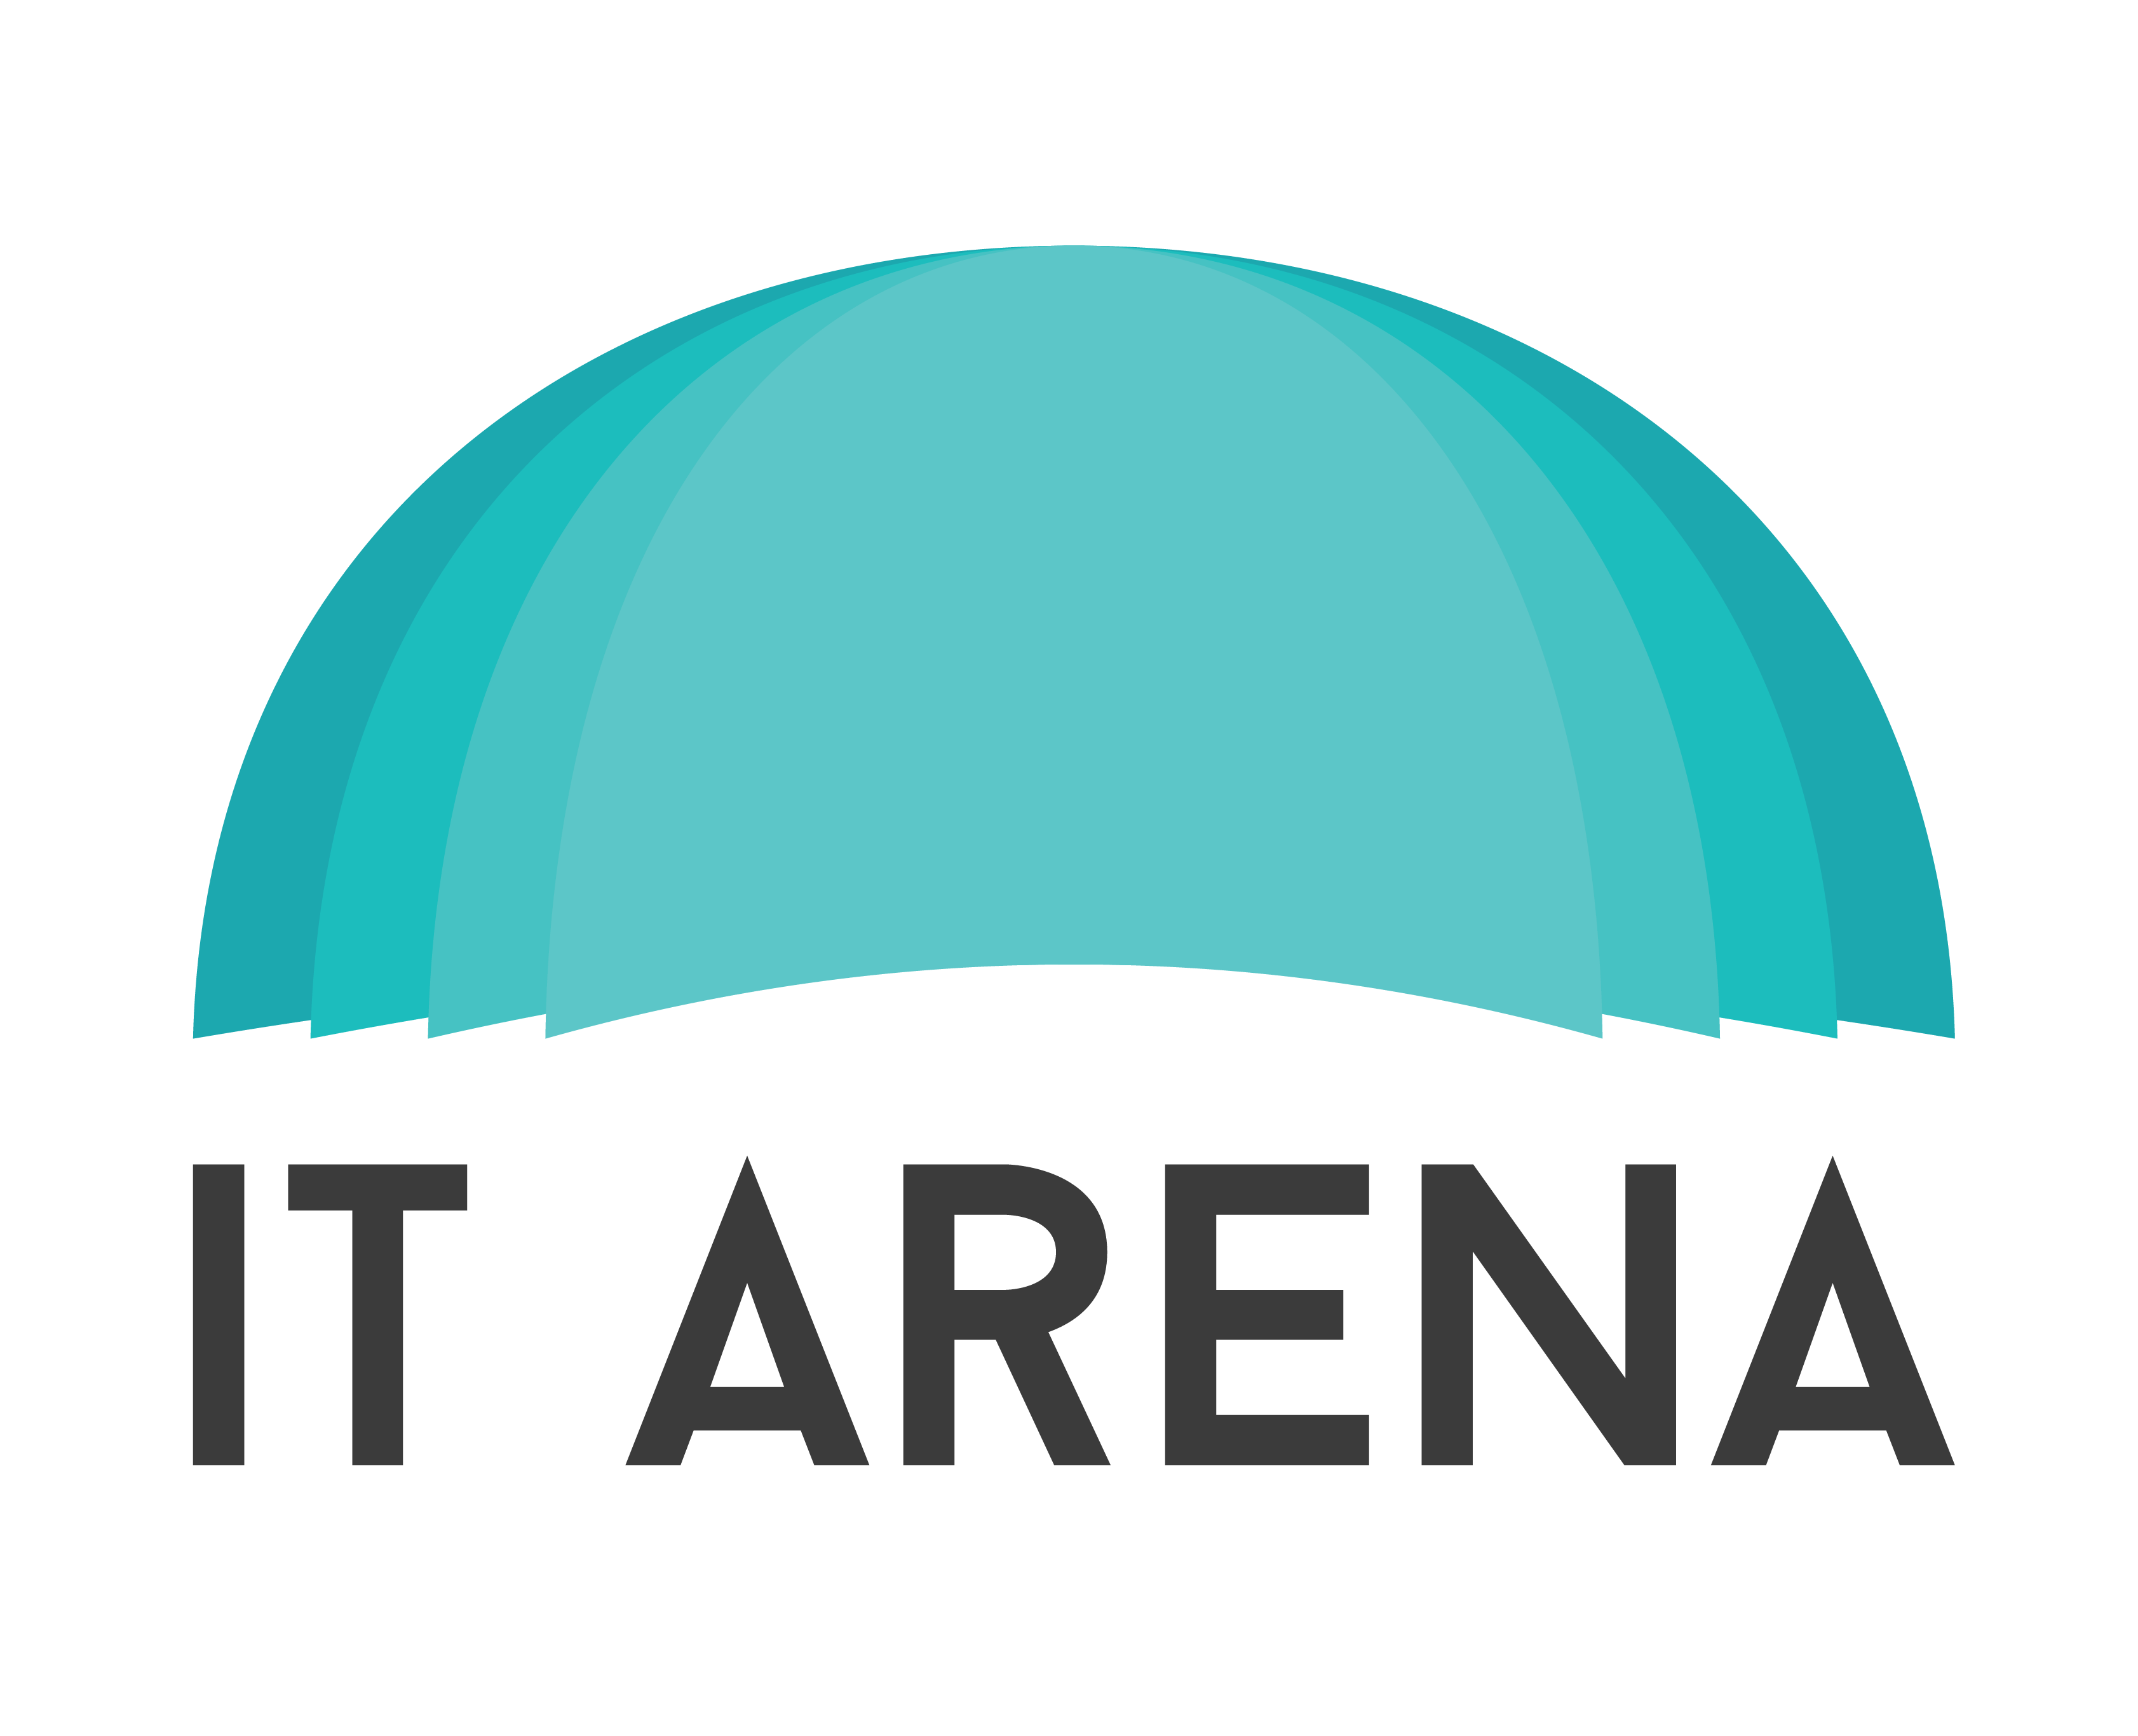 Узнайте всё о современных ІТ трендах на конференции Lviv IT Arena 2-4 октября!